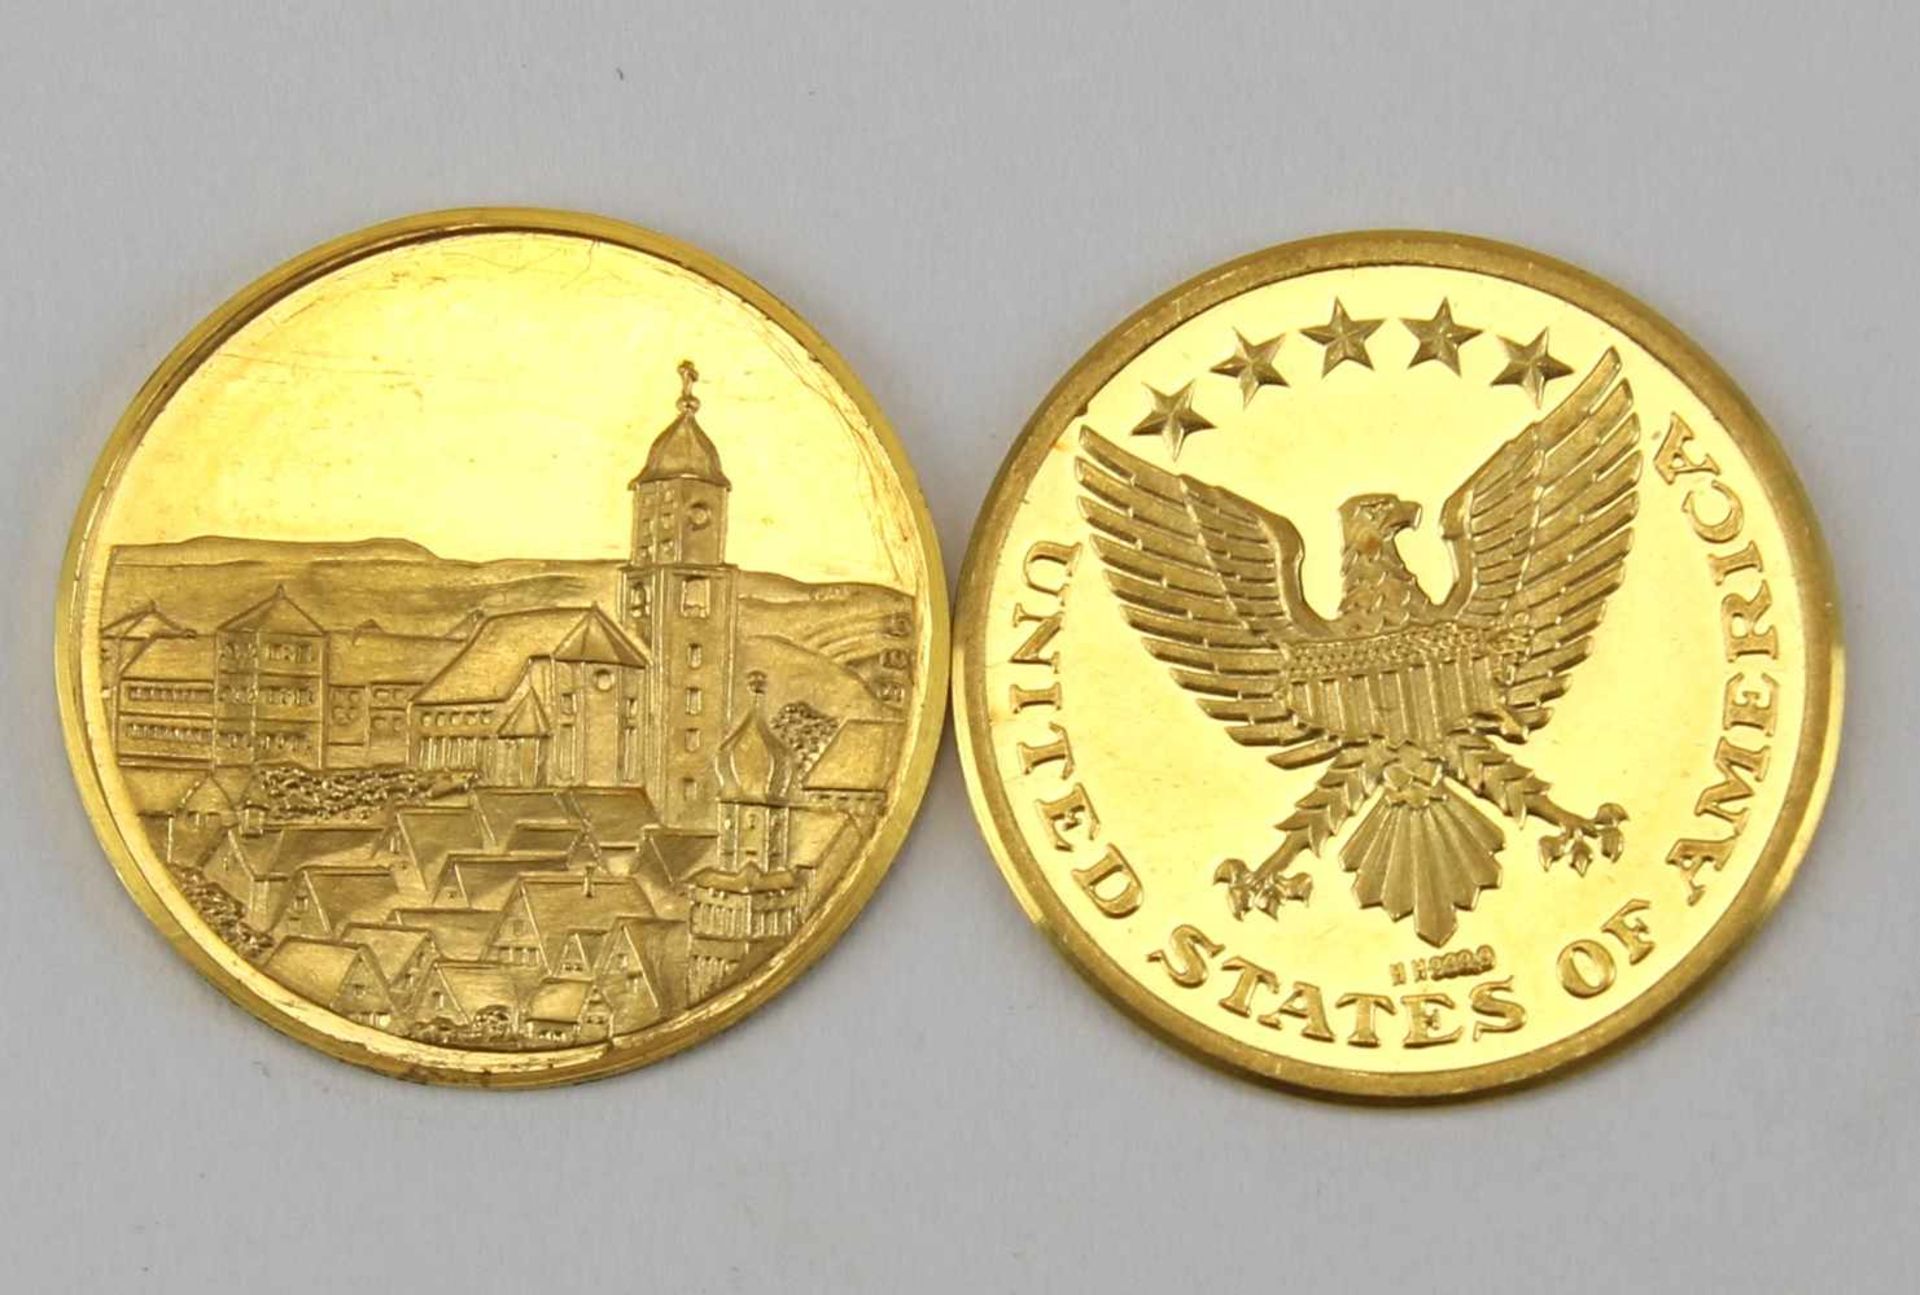 Zwei GoldmedaillenGedenkmedaille Stadt Messkirch, GG 986, Durchmesser ca. 20 mm, Gewicht ca. 3,89 - Bild 2 aus 2